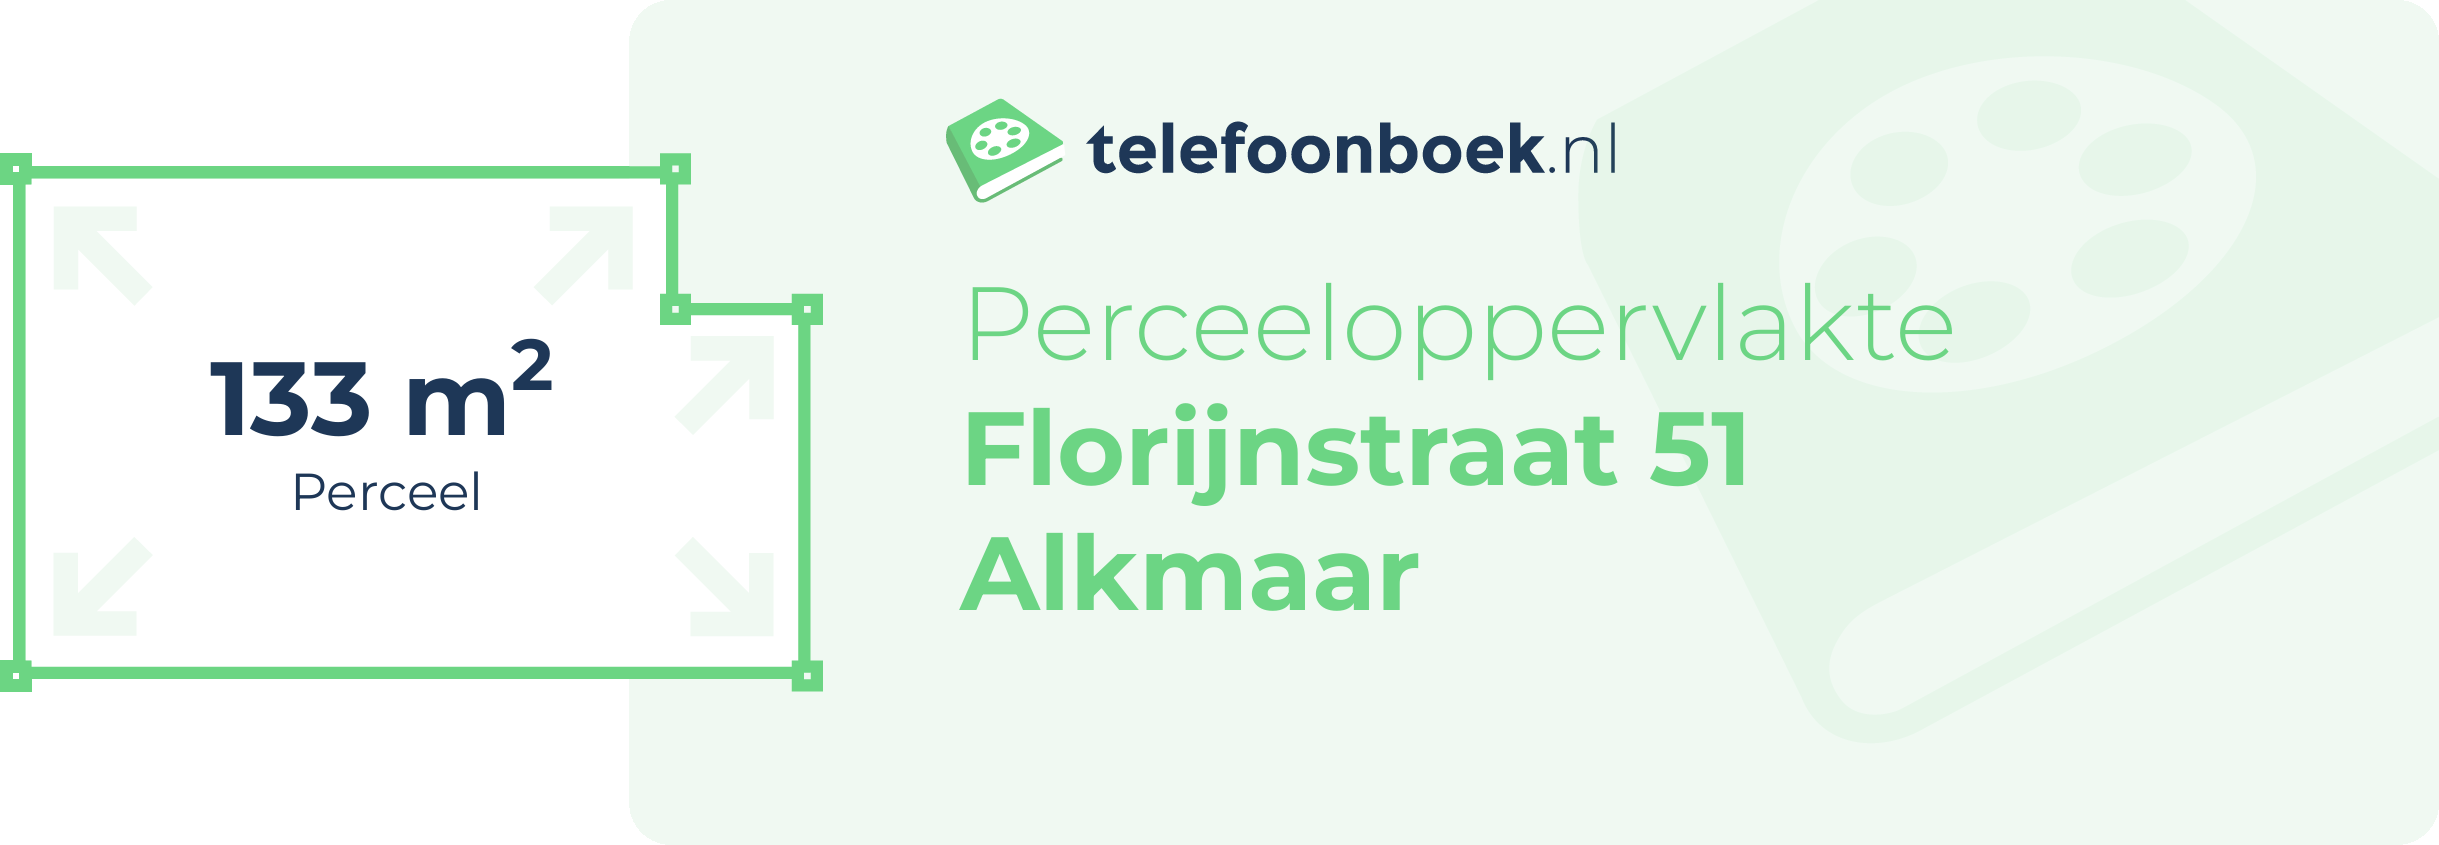 Perceeloppervlakte Florijnstraat 51 Alkmaar